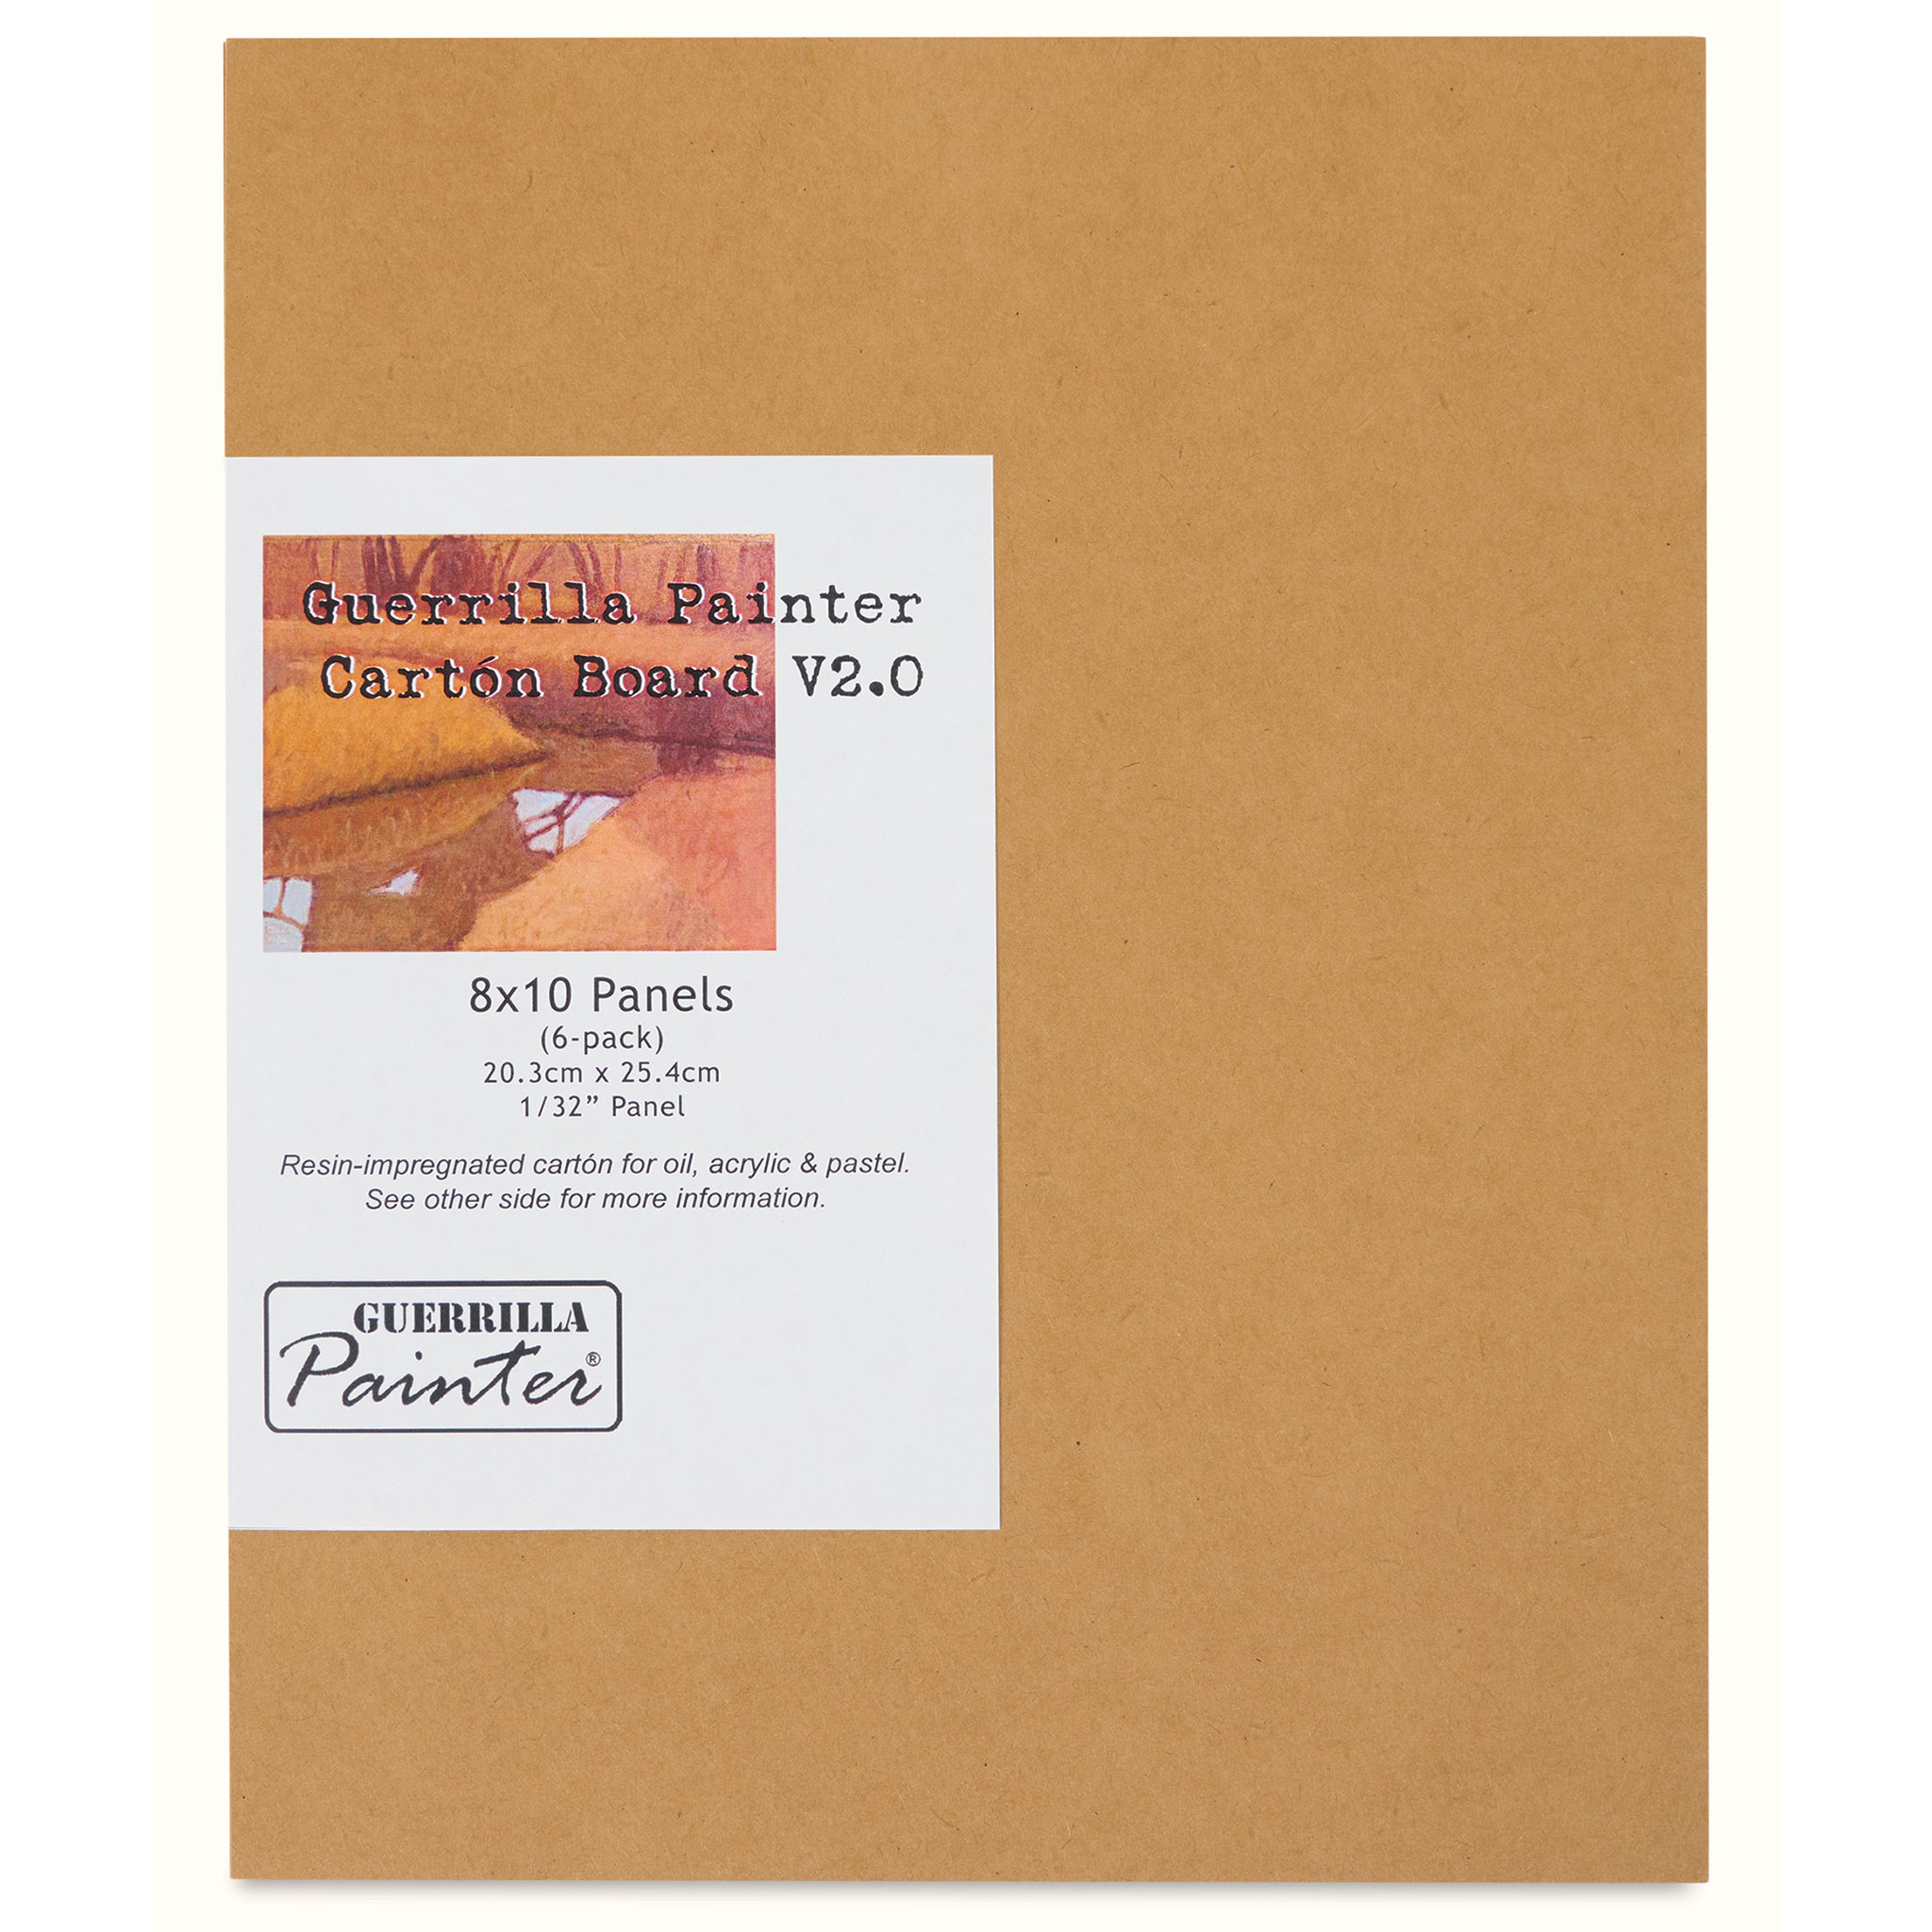 Campaign Box™ Bag – Guerrilla Painter